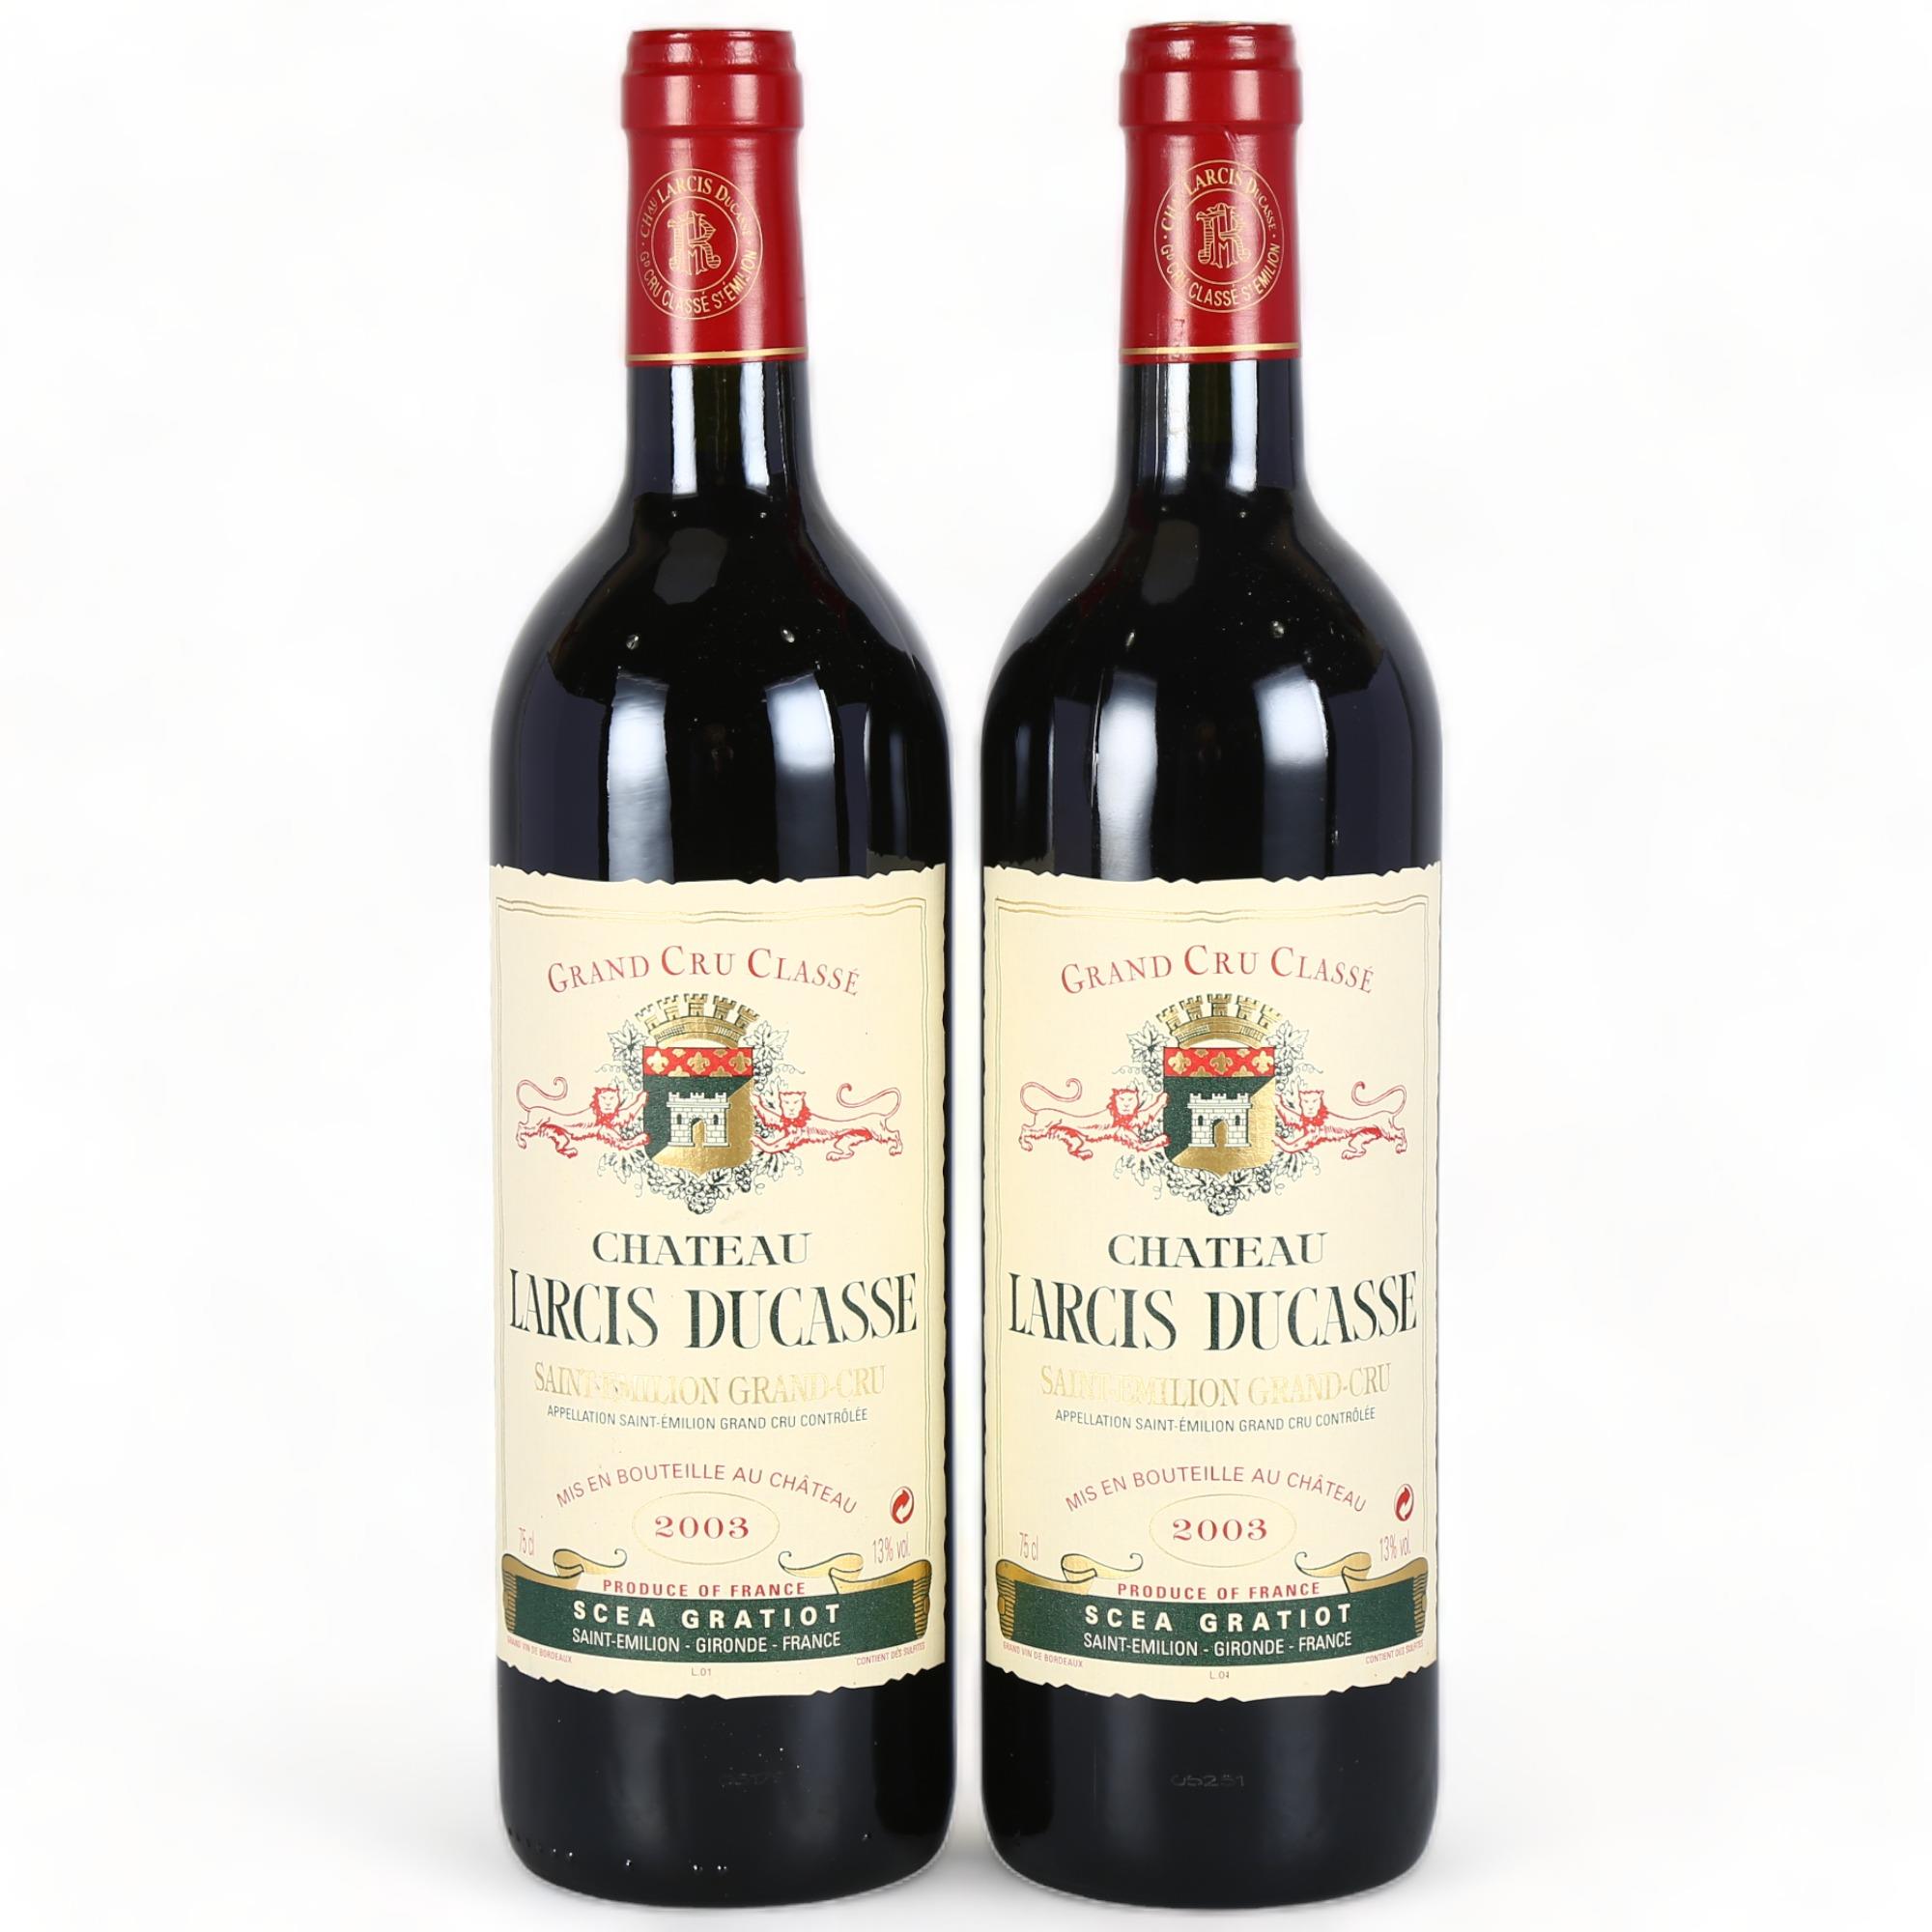 Chateau Larcis Ducasse 2003, St Emilion Grand Cru x 2 bottles. 91 points Wine Advocate. Bordeaux red